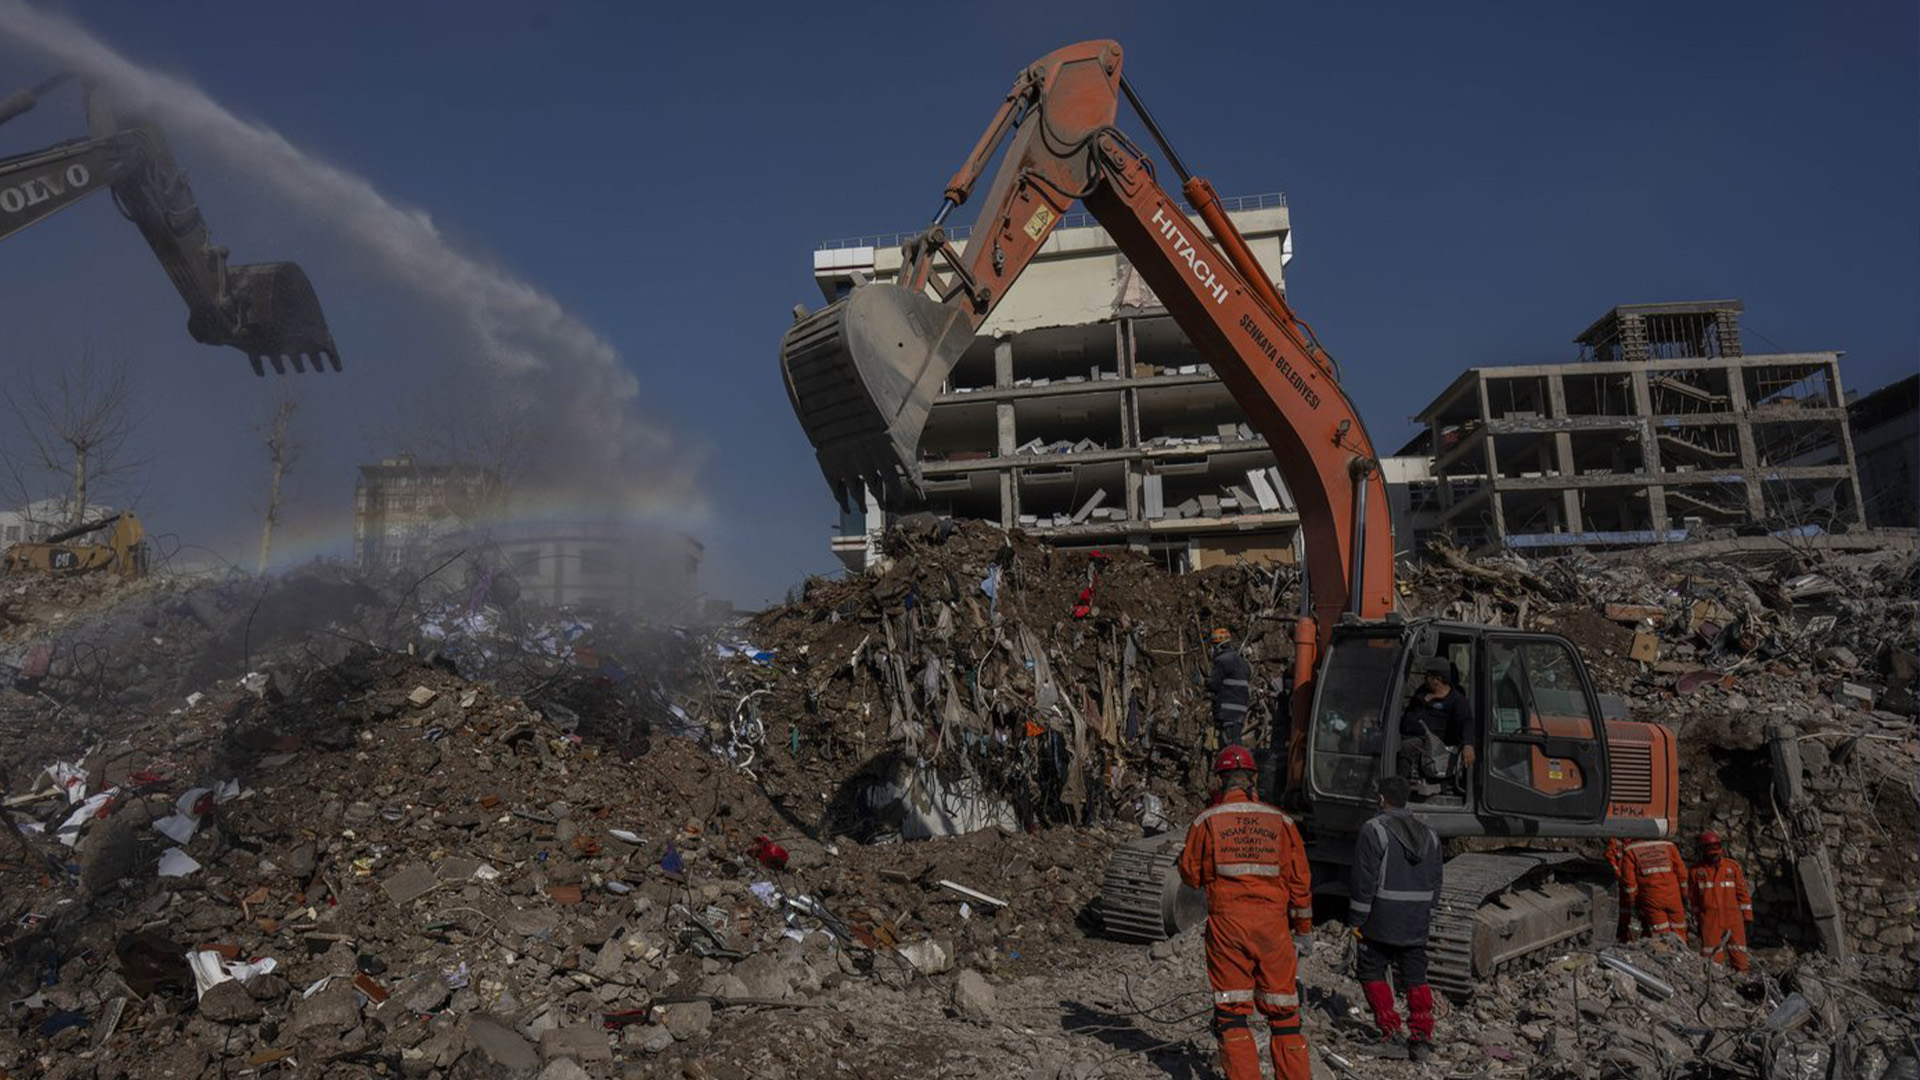 Des excavatrices travaillent sur le site de bâtiments qui se sont effondrés lors du tremblement de terre de Kahramanmaras, en Turquie, le vendredi 17 février 2023. Un tremblement de terre de magnitude 7,8 avec son épicentre dans la province de Kharamanmaras, dans le sud-est de la Turquie, a frappé aux premières heures du 6 février, suivi de plusieurs répliques, dont une majeure de magnitude 7,5 neuf heures après la première secousse.